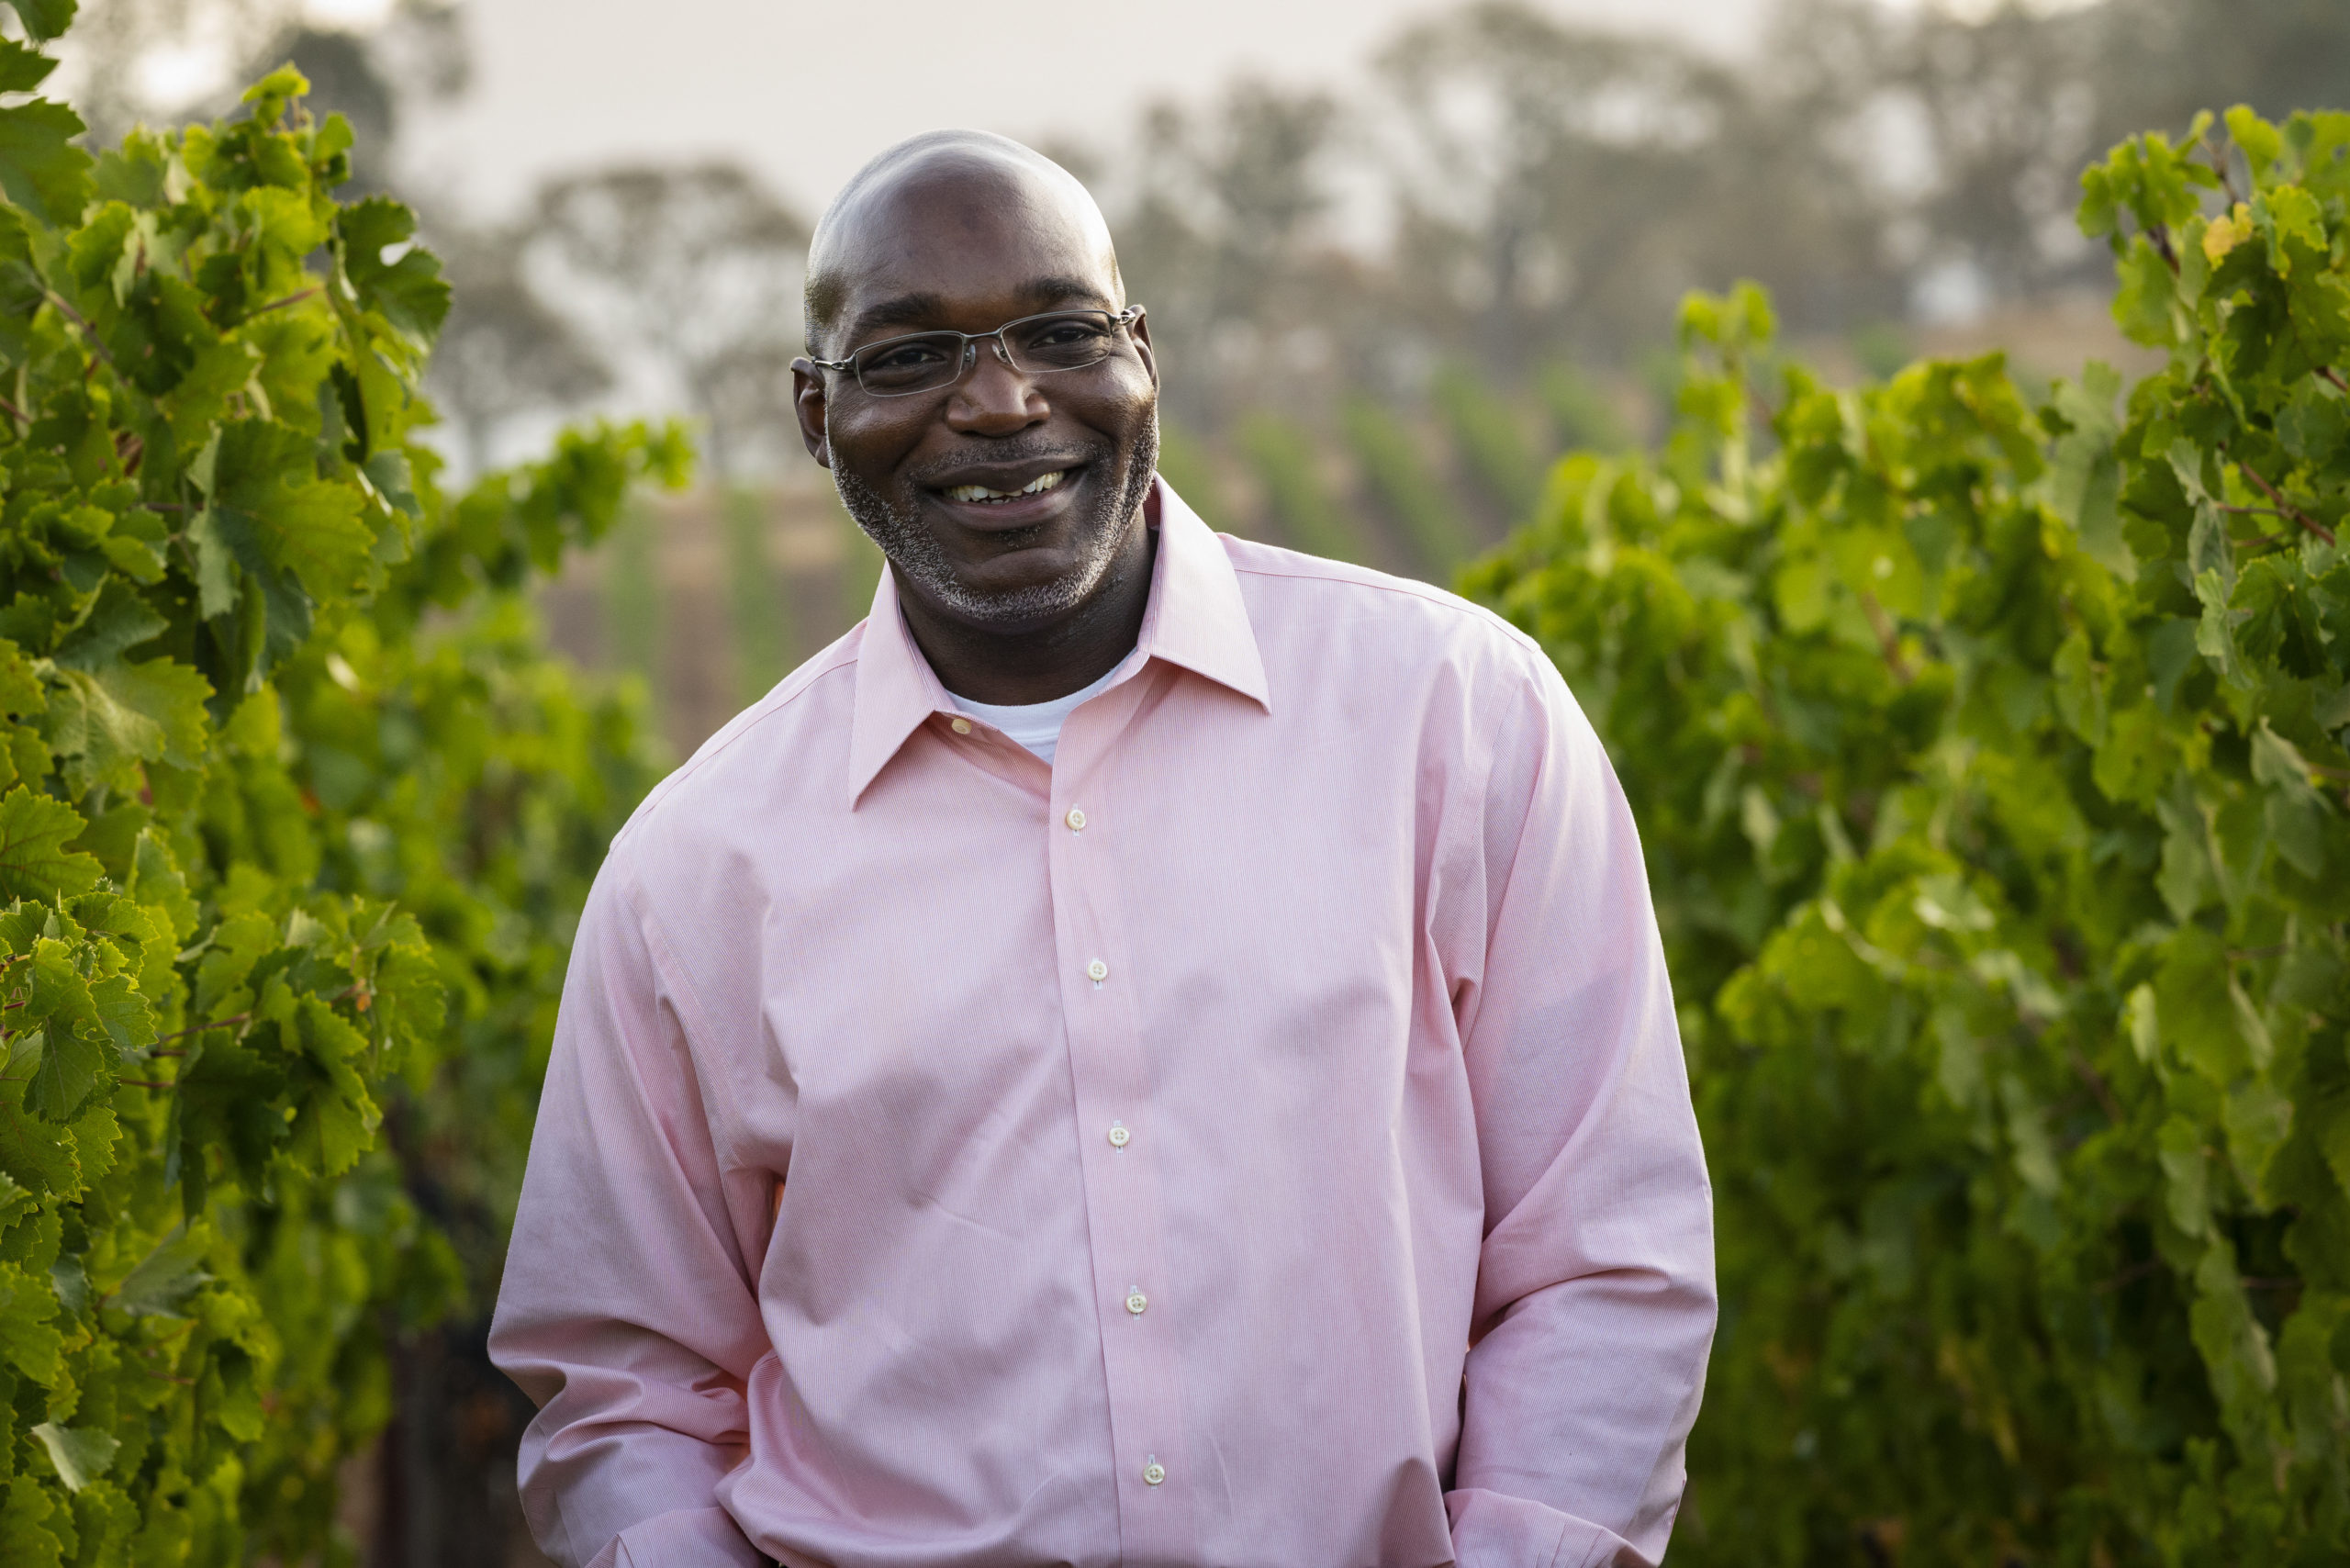 Marbue Marke standing in vineyard